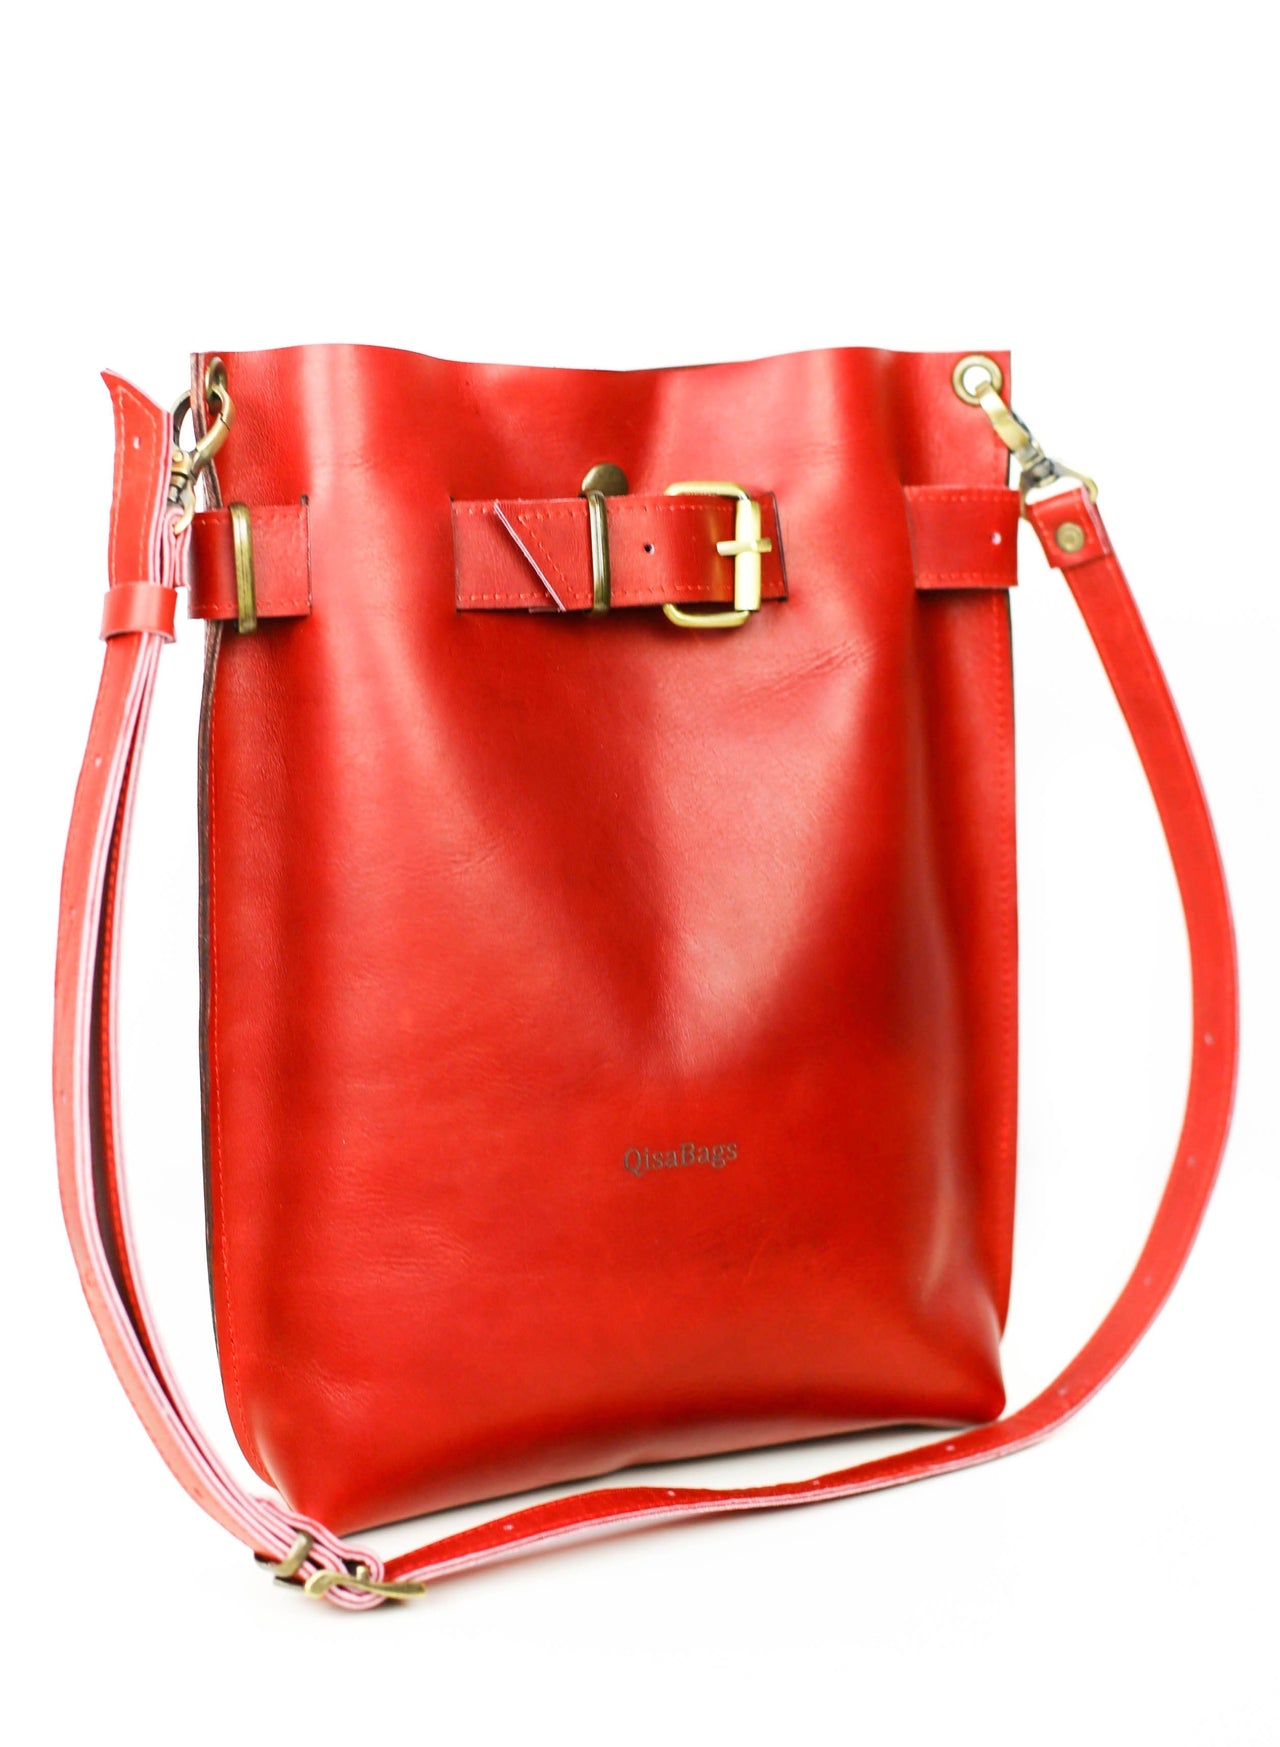 Designer Red Leather Handbag